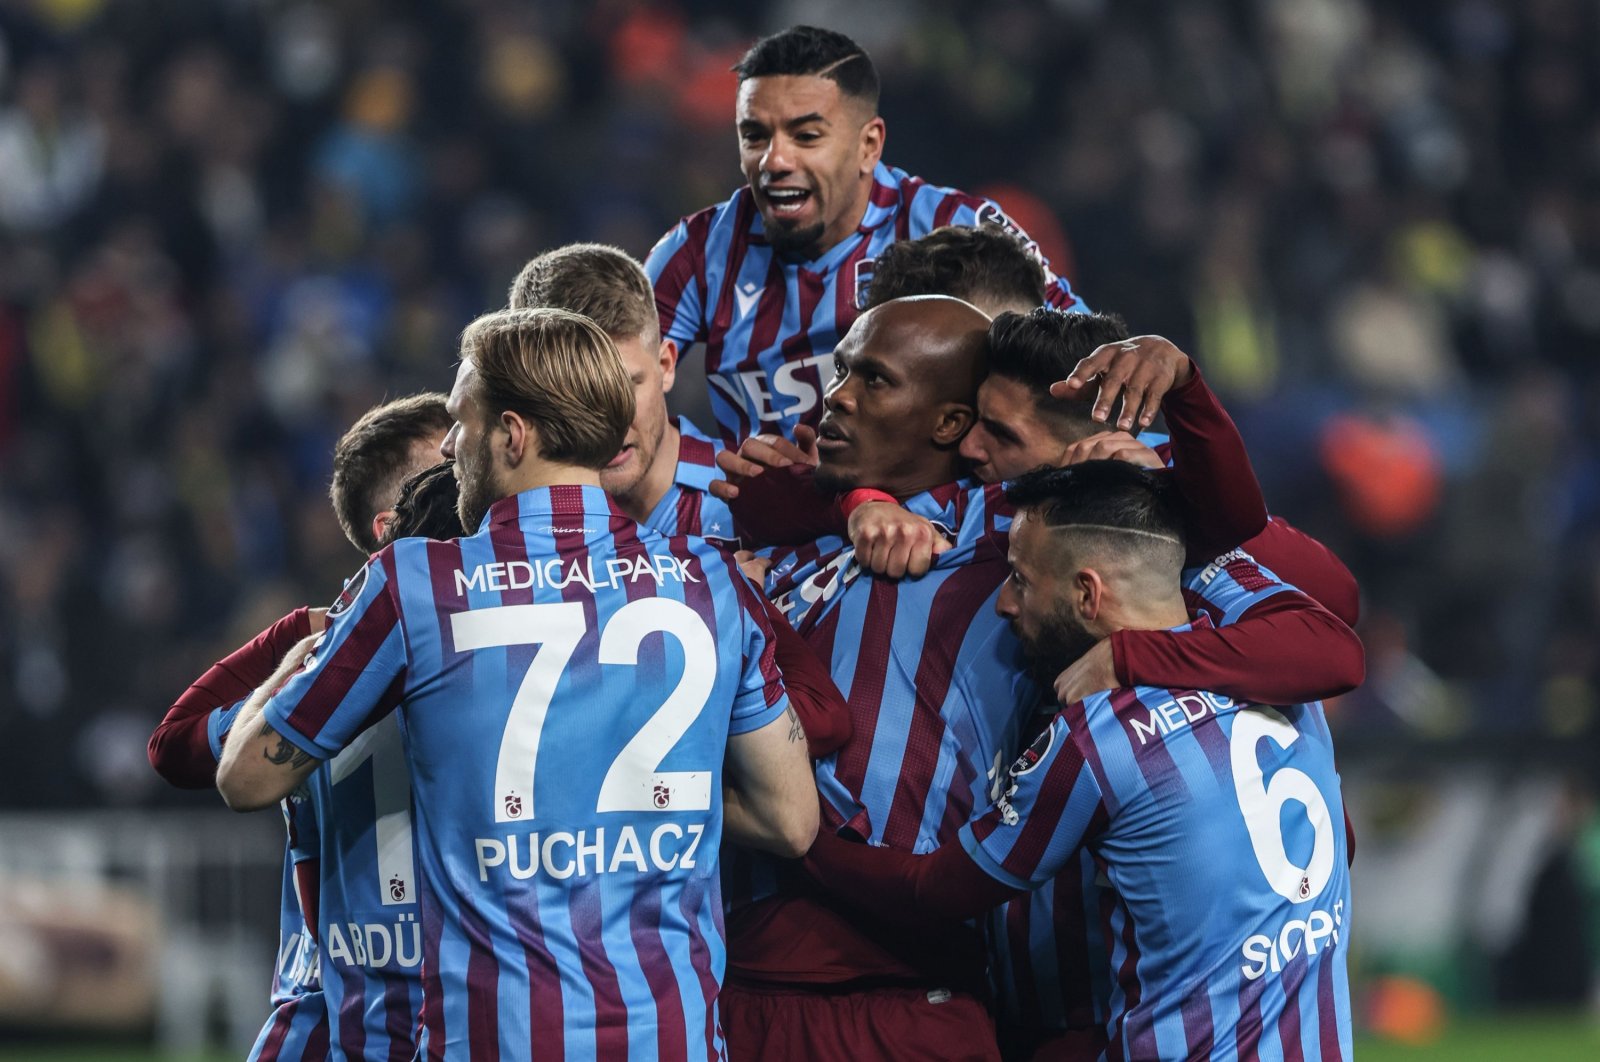 Süper Lig bersiap untuk pertarungan Trabzonspor-Beşiktaş